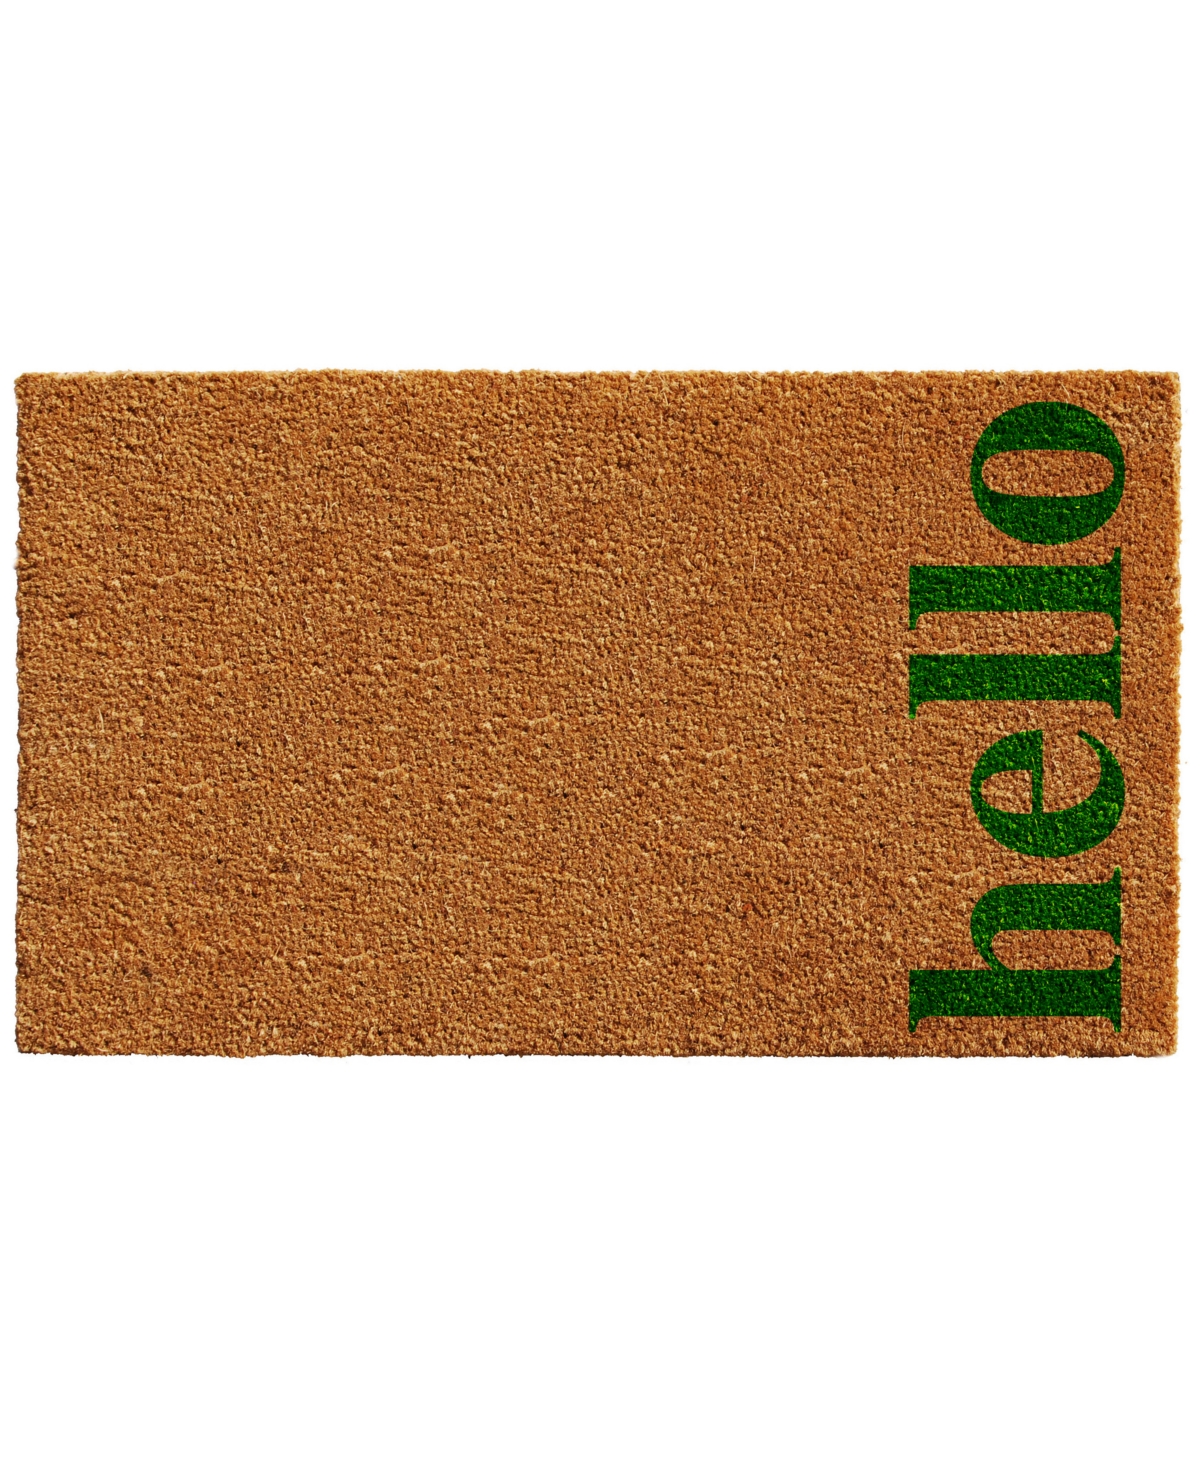 Home & More Vertical Hello Coir/vinyl Doormat, 17" X 29" In Natural,green